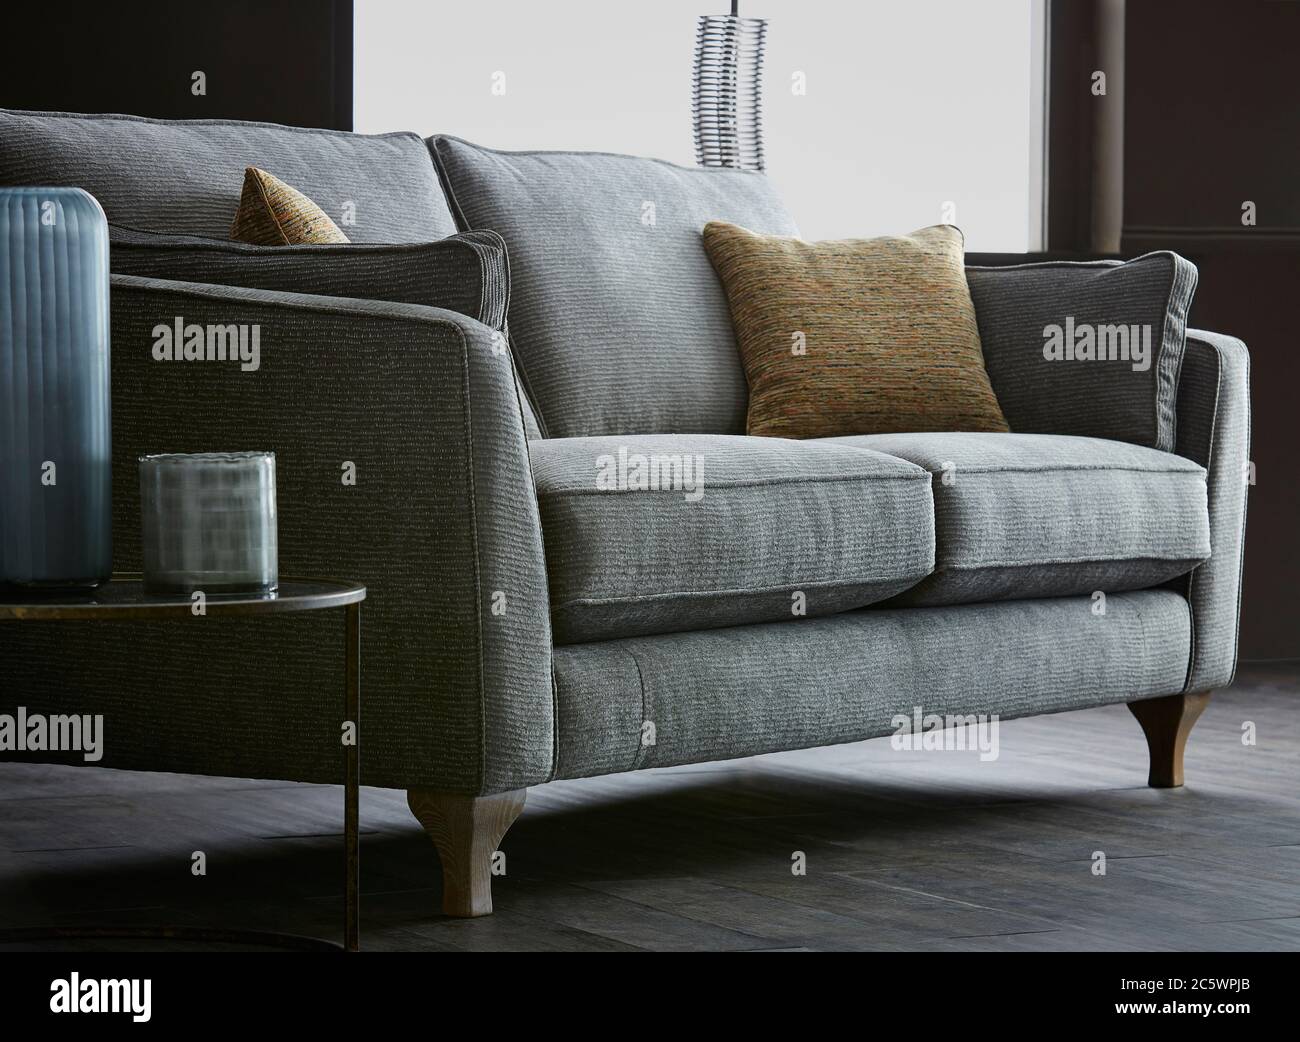 Aufnahme einer bequemen Couch mit Kissen im Wohnzimmer Stockfoto